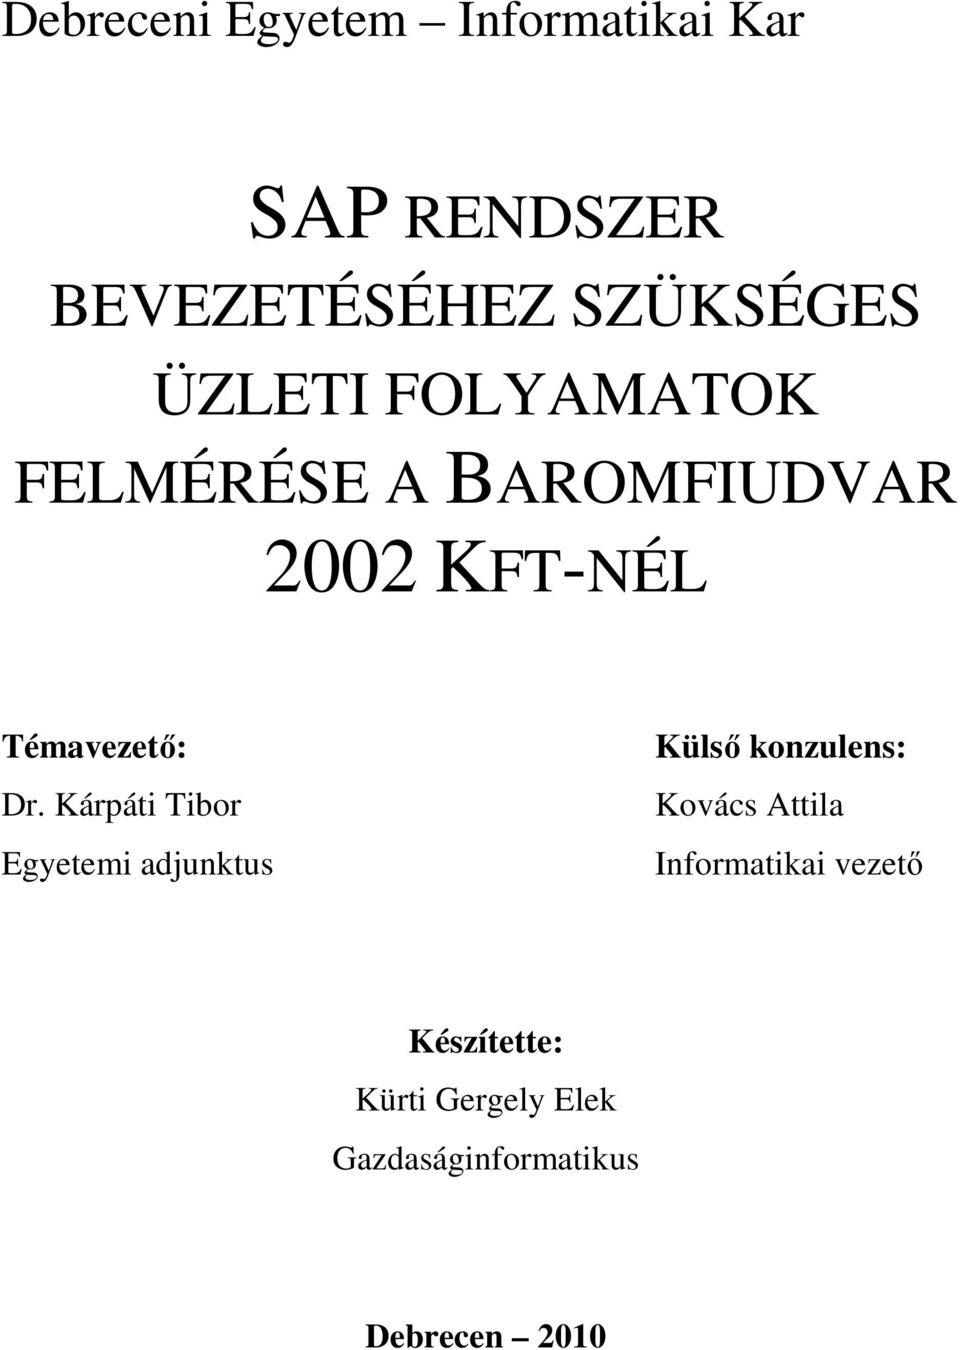 Debreceni Egyetem Informatikai Kar BEVEZETÉSÉHEZ SZÜKSÉGES ÜZLETI  FOLYAMATOK FELMÉRÉSE A BAROMFIUDVAR 2002 KFT-NÉL. - PDF Free Download